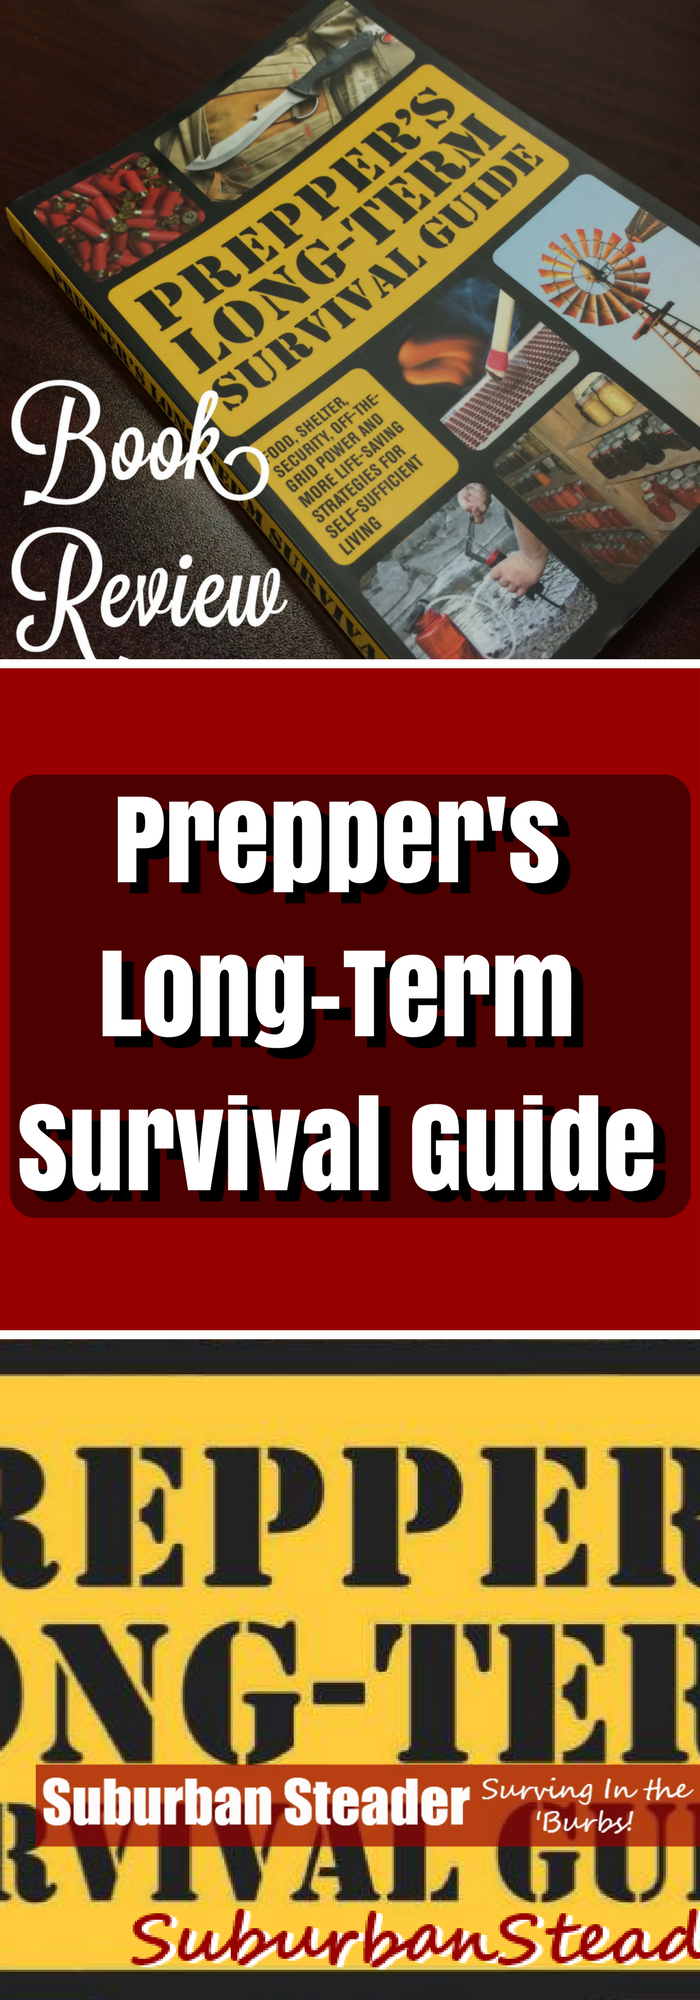 Prepper's Long-Term Survival Guide (Book Review)